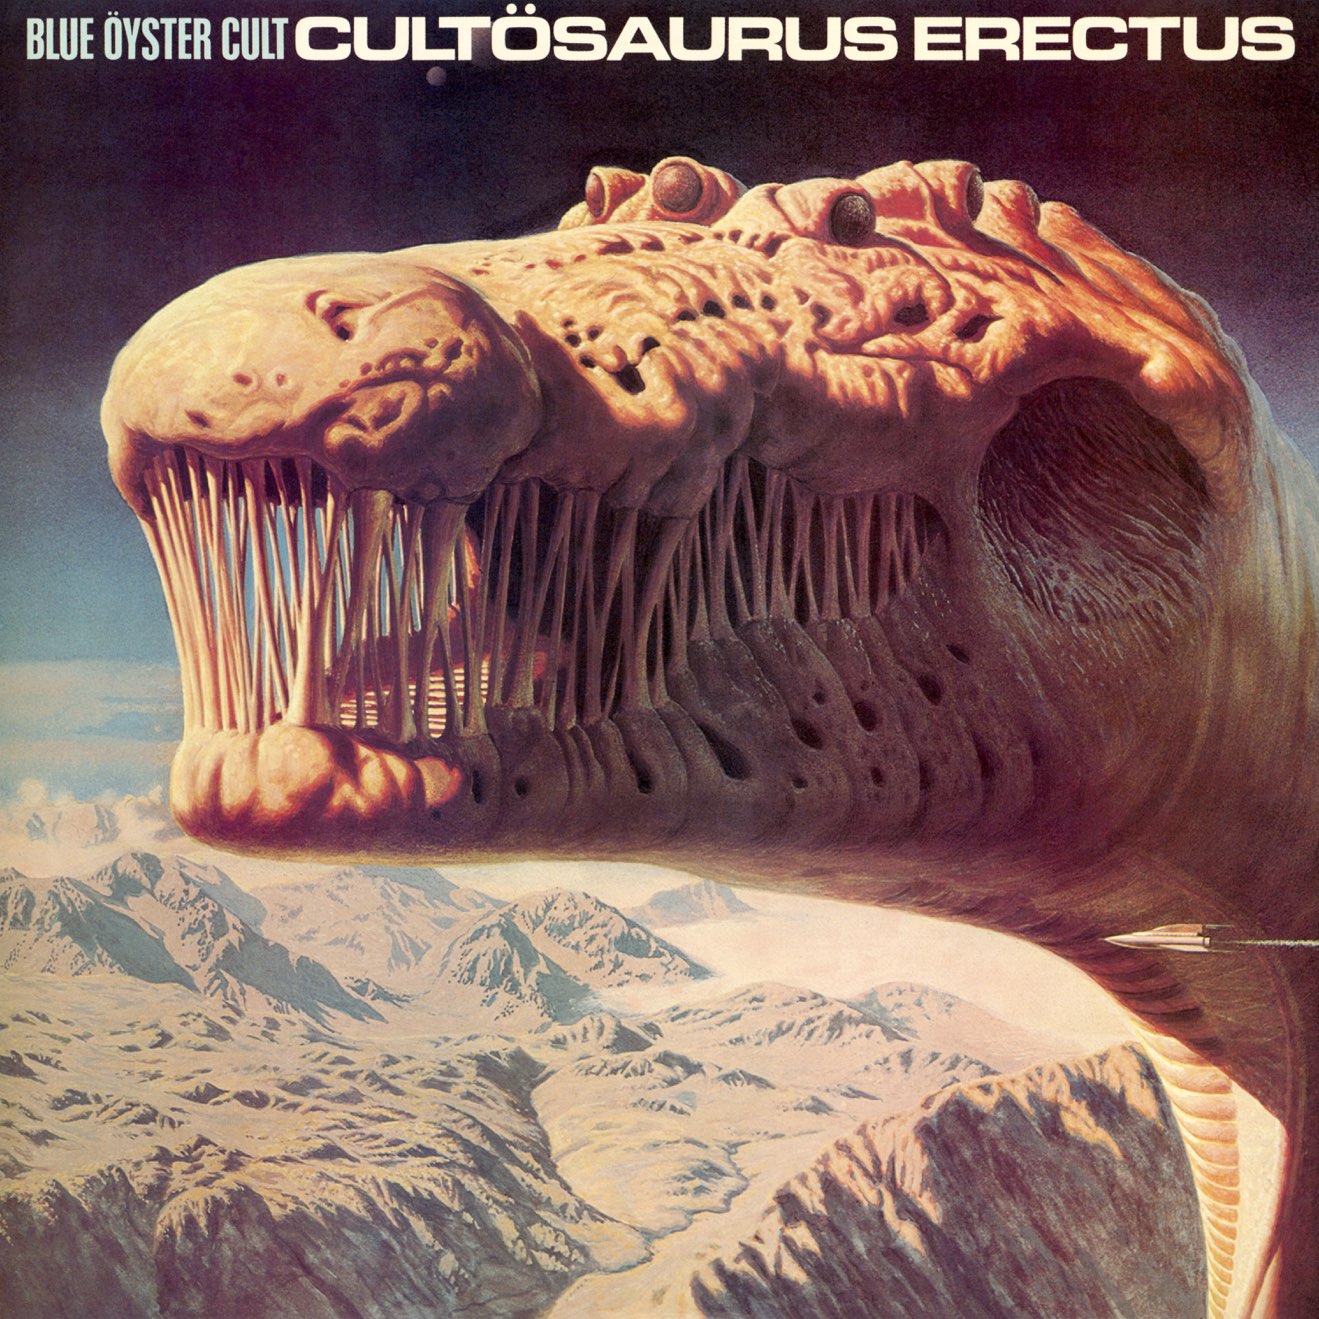 Blue Öyster Cult – Cultösaurus Erectus (1980) [iTunes Match M4A]